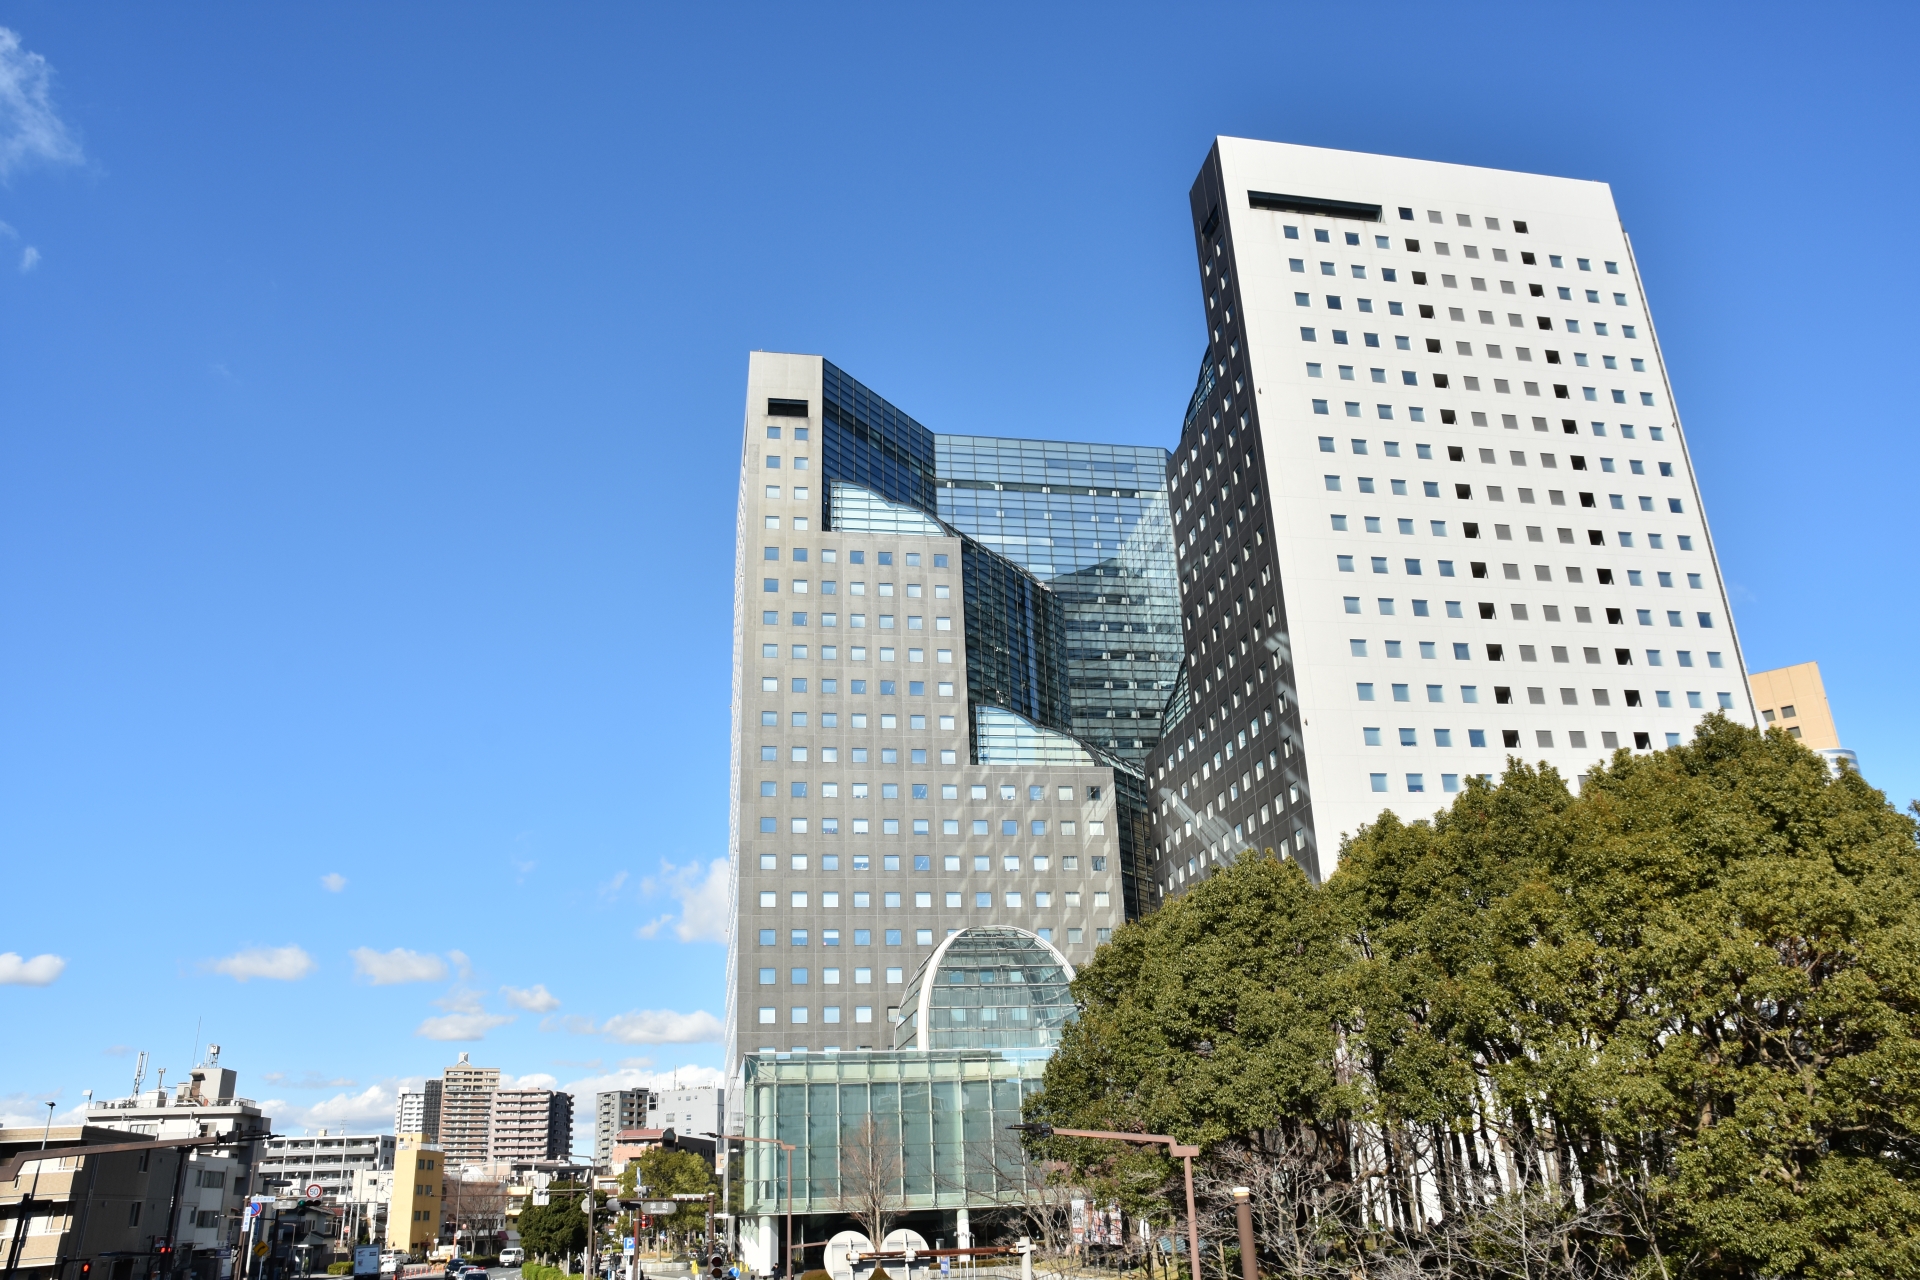 神奈川県では横浜市に次ぐ第2の都市として知られる川崎市。1924年に誕生し、72年に政令指定都市へ移行。翌年には人口が100万人を突破し、2017年に150万人を超えた。